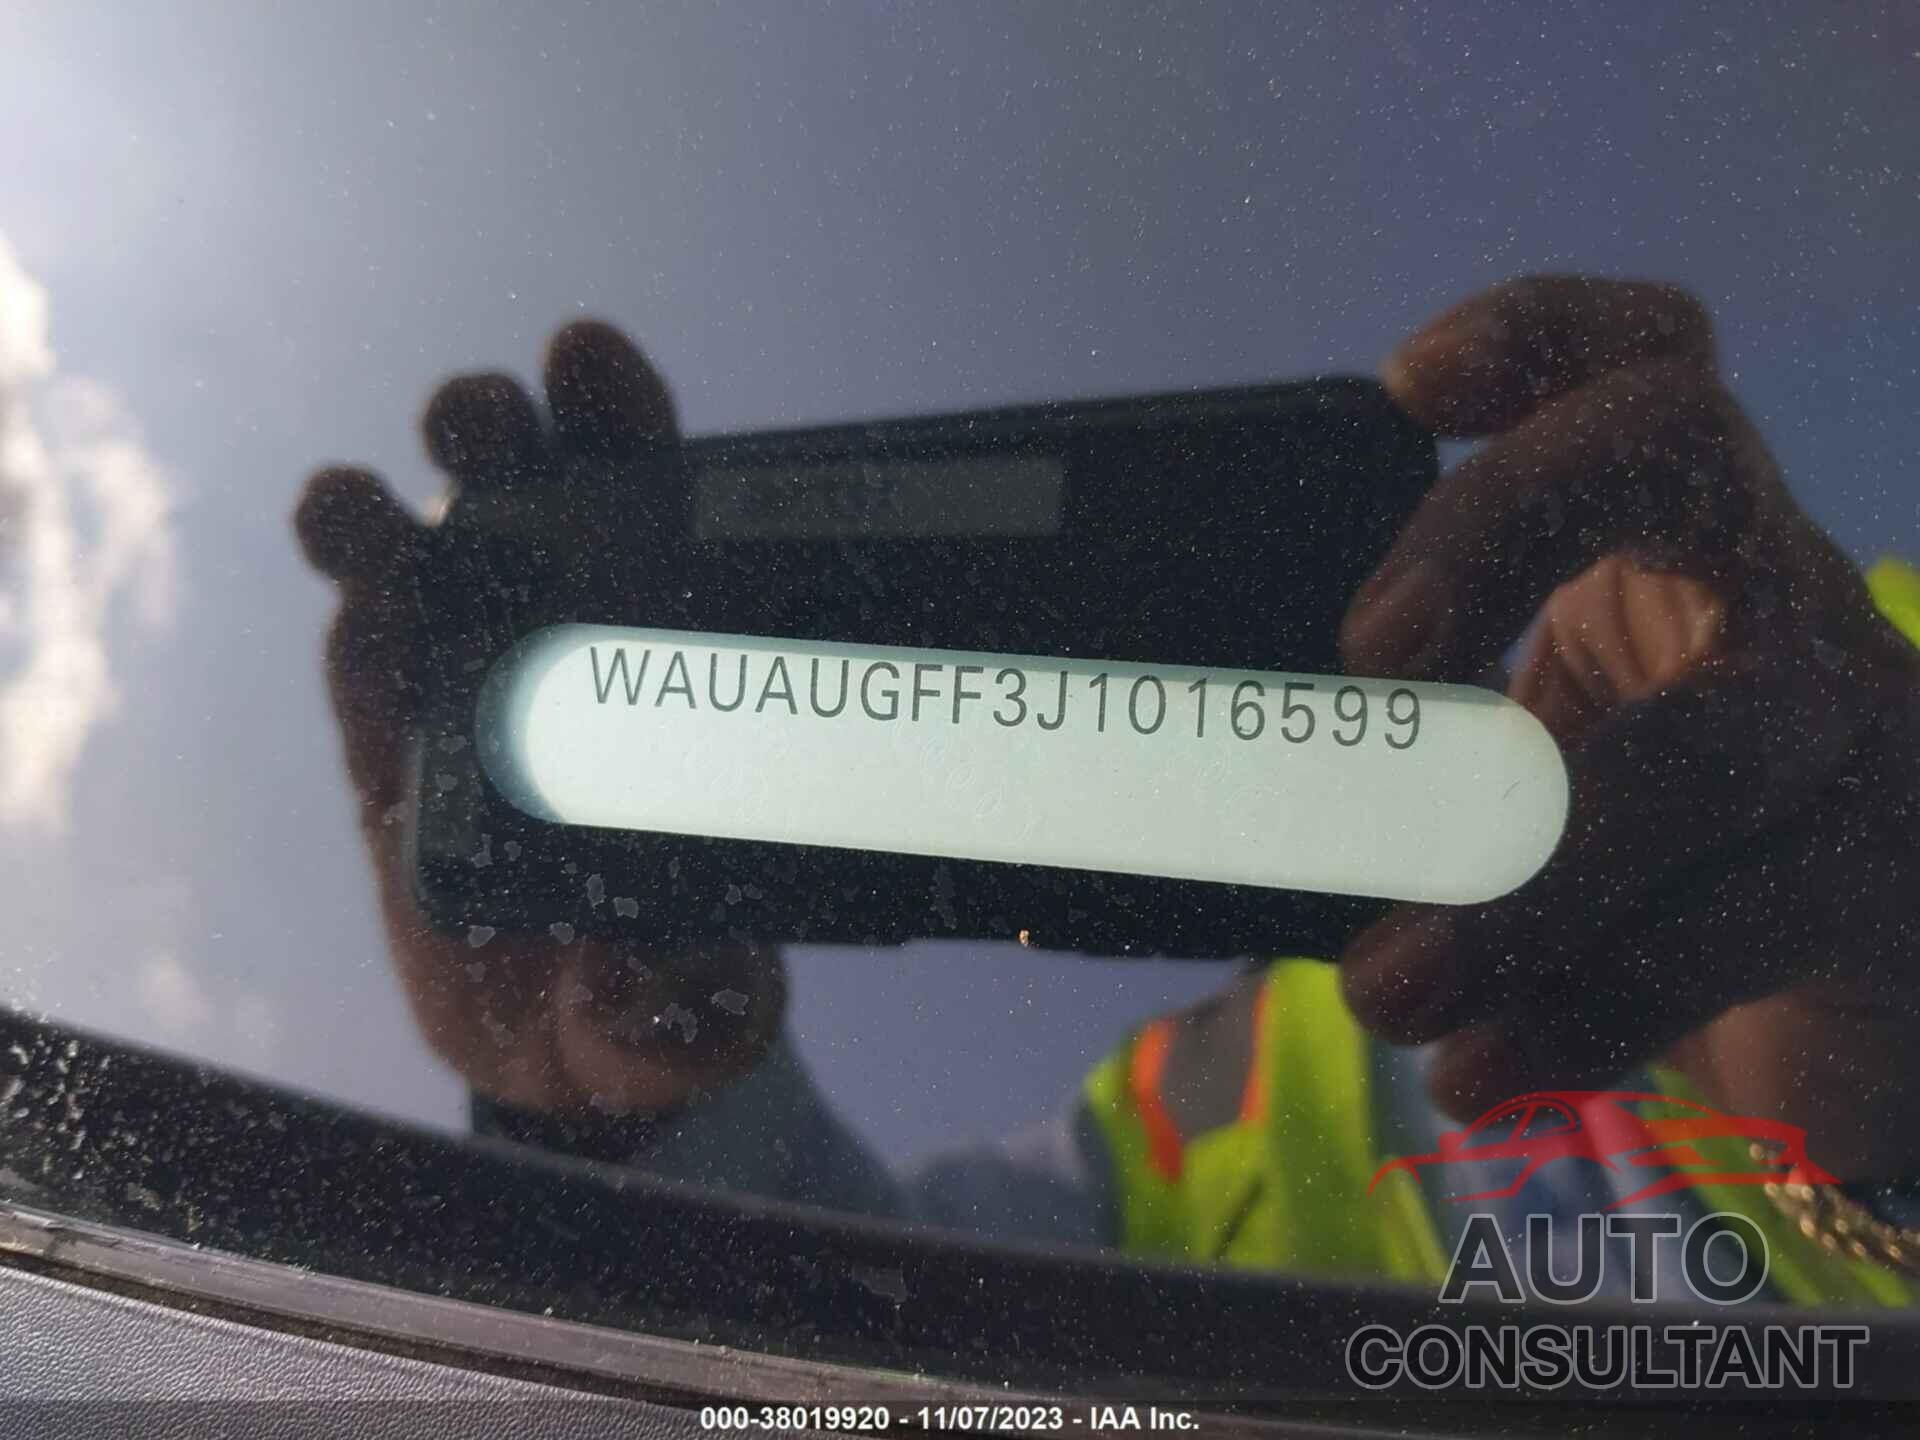 AUDI A3 2018 - WAUAUGFF3J1016599